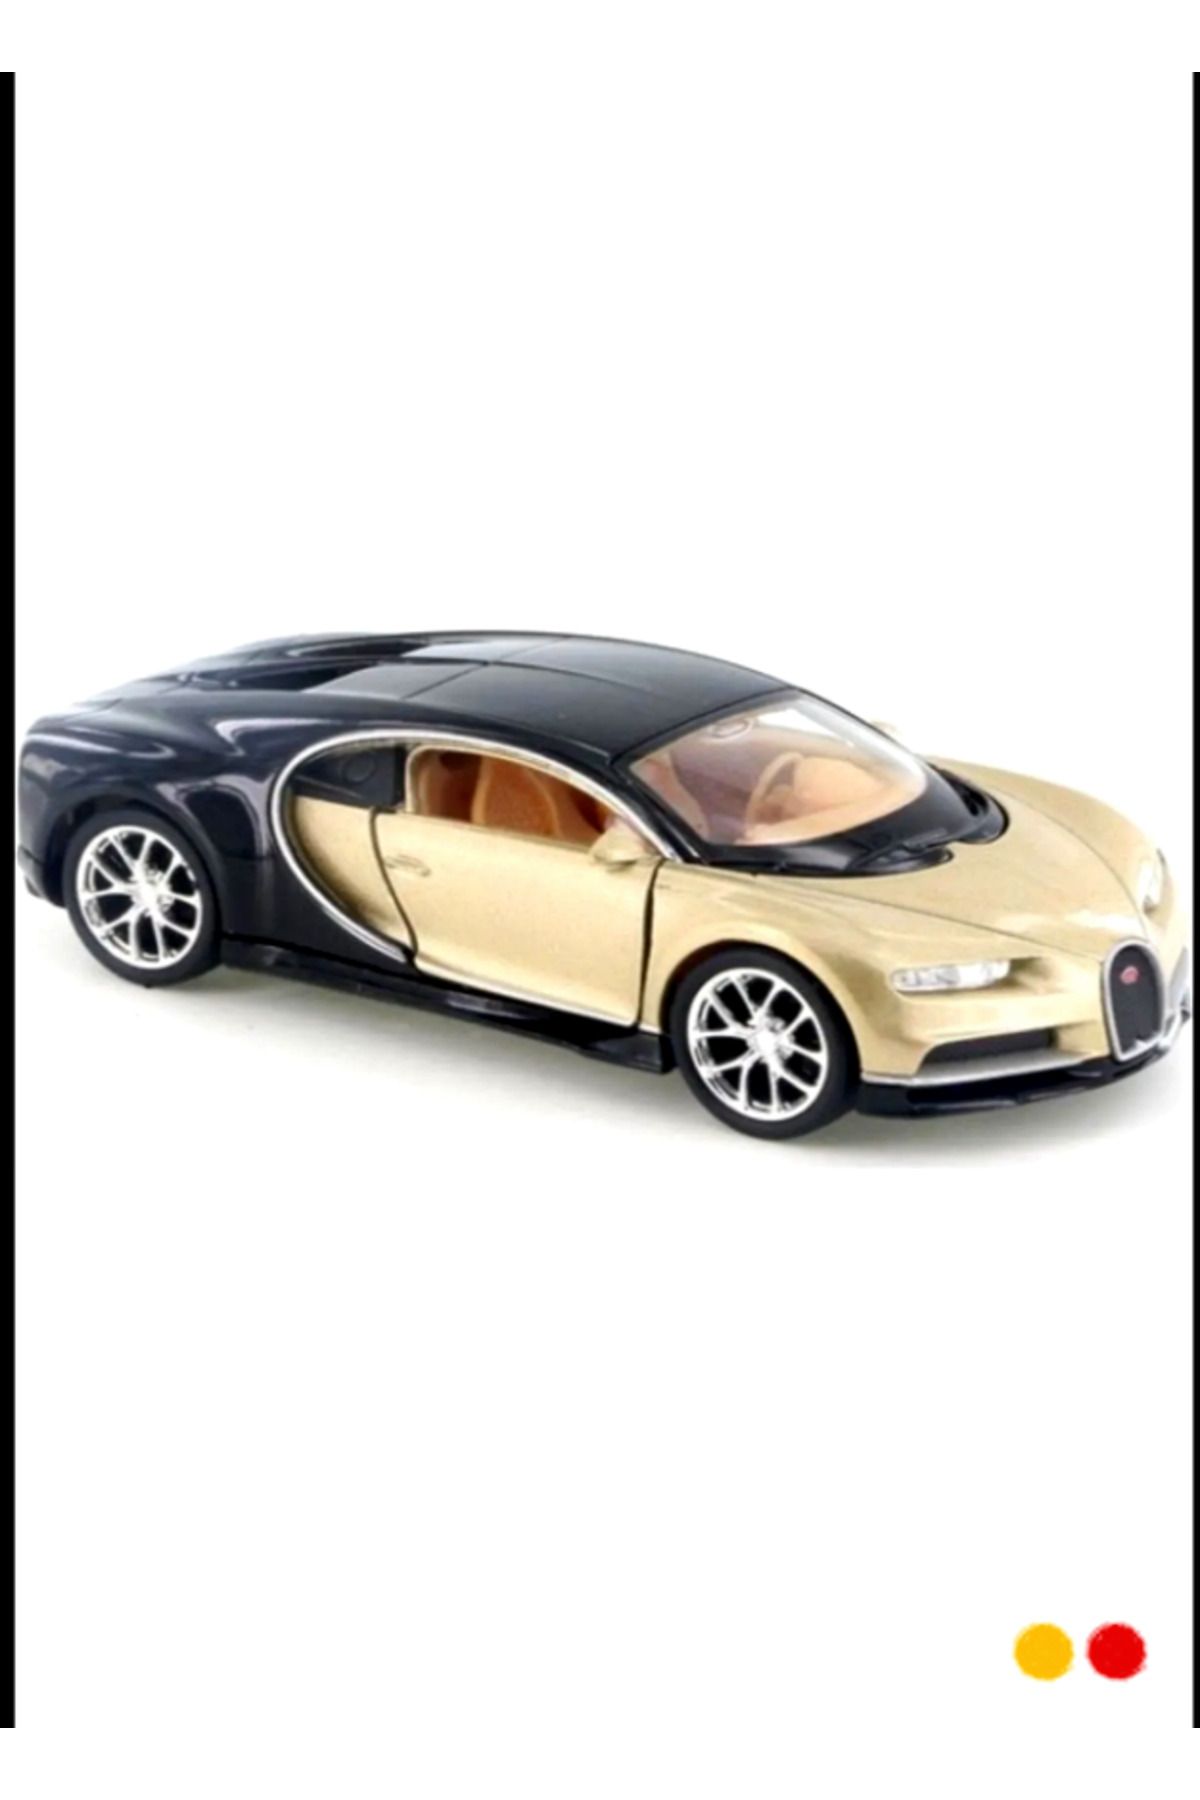 OMZ Lisanslı Bugatti Chiron Çek-bırak Metal Model Araba 1:32 Egitici Oyuncaklar Erkek Cocuk Oyuncak